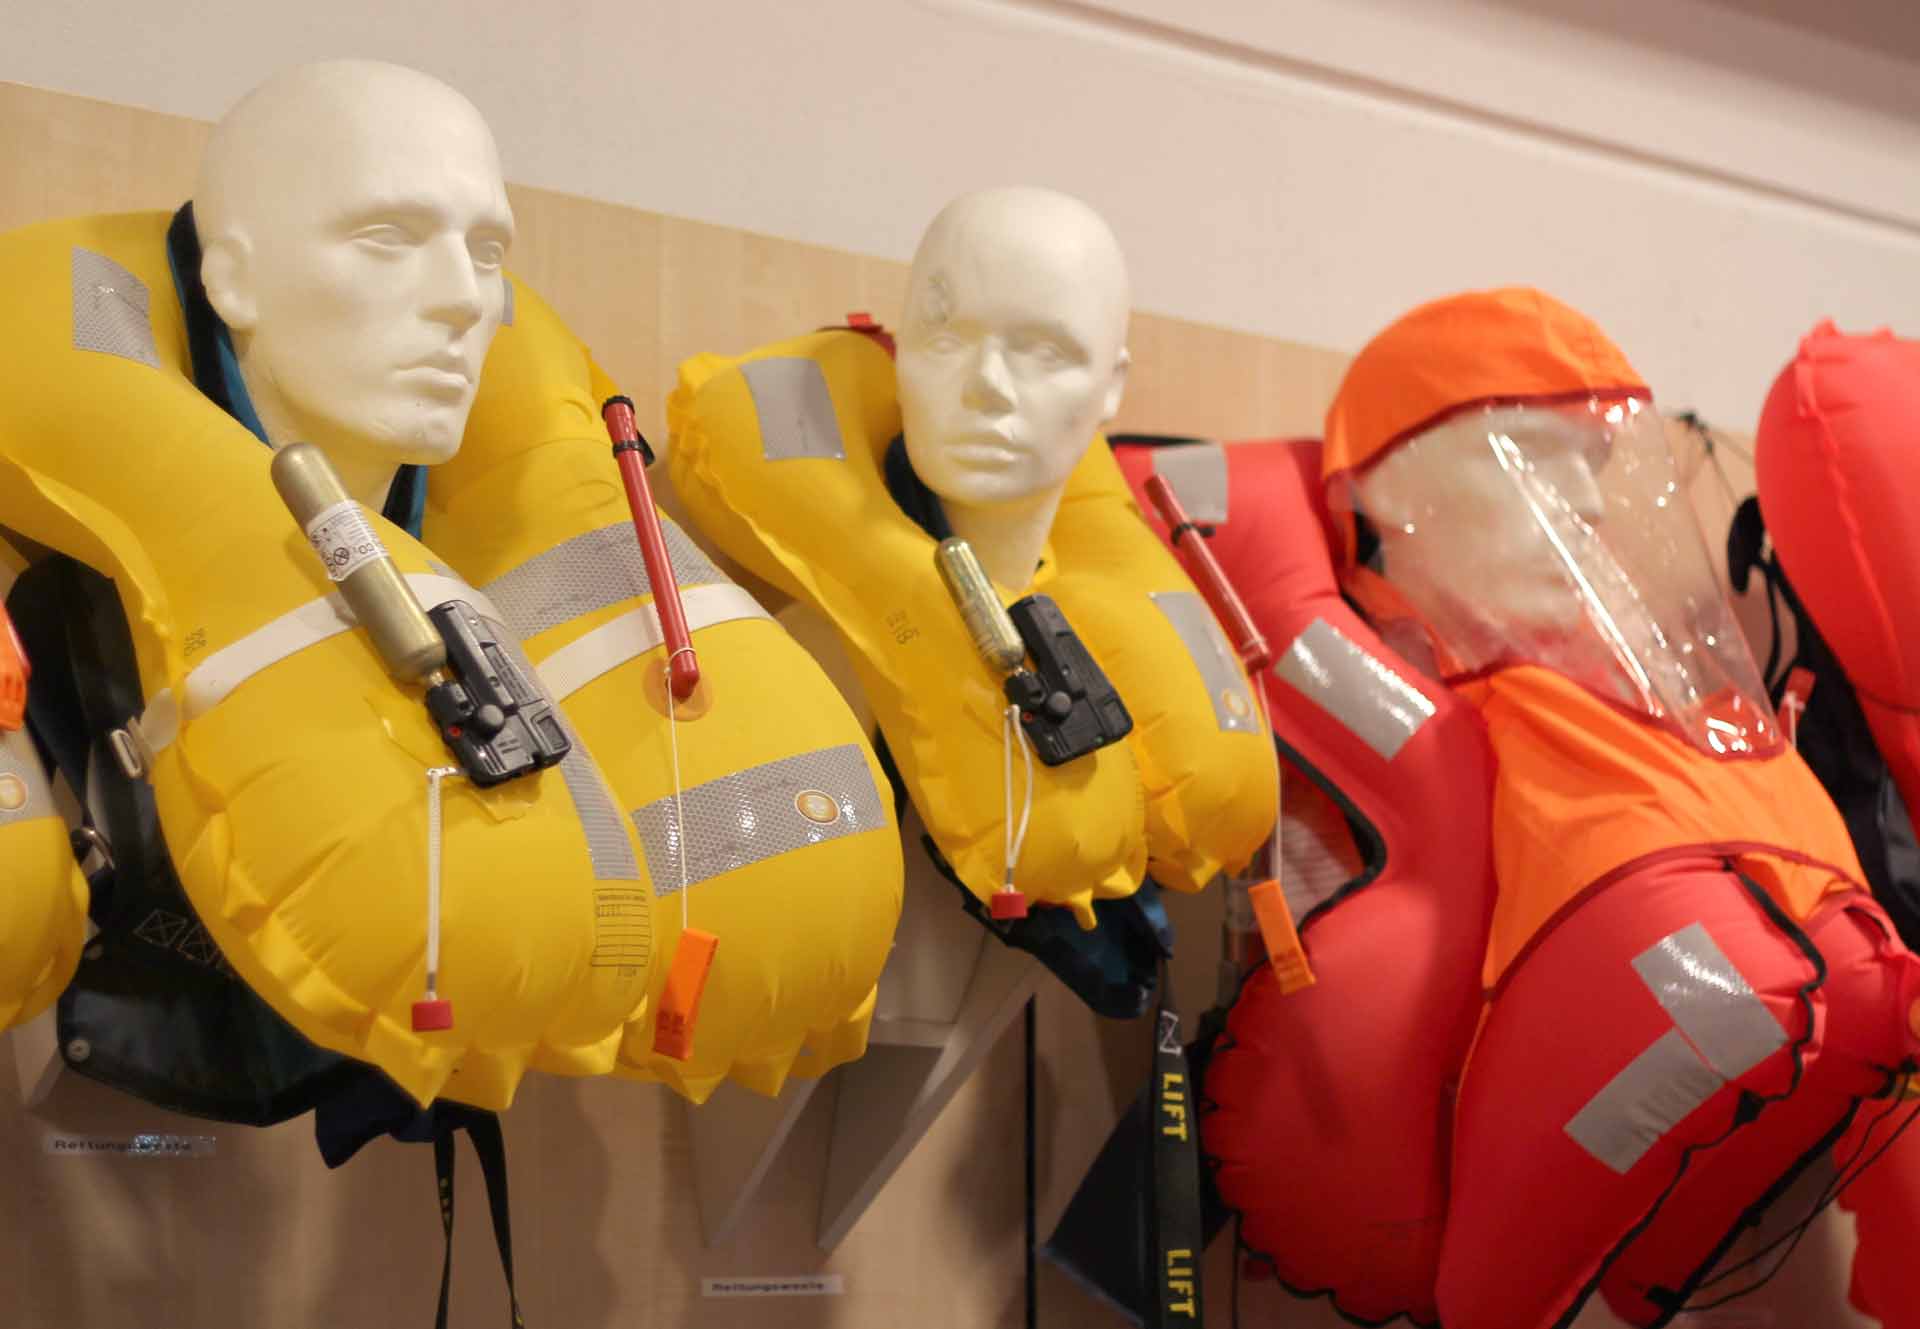 150 N life jackets are minimum